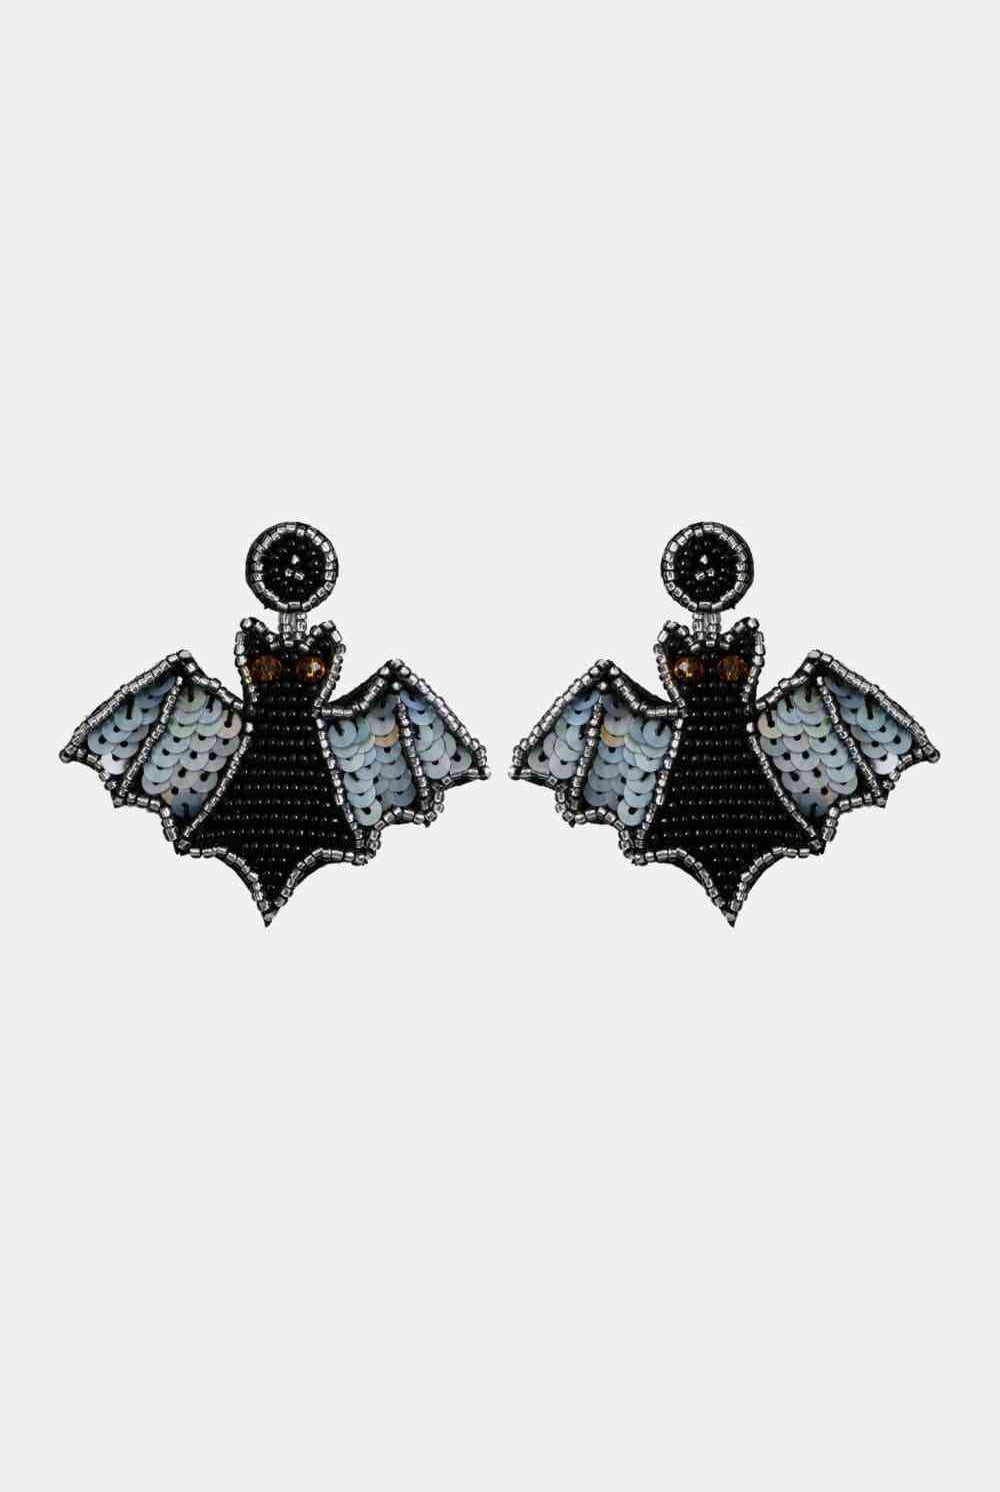 Bat Shape Beaded Dangle Earrings - GemThreads Boutique